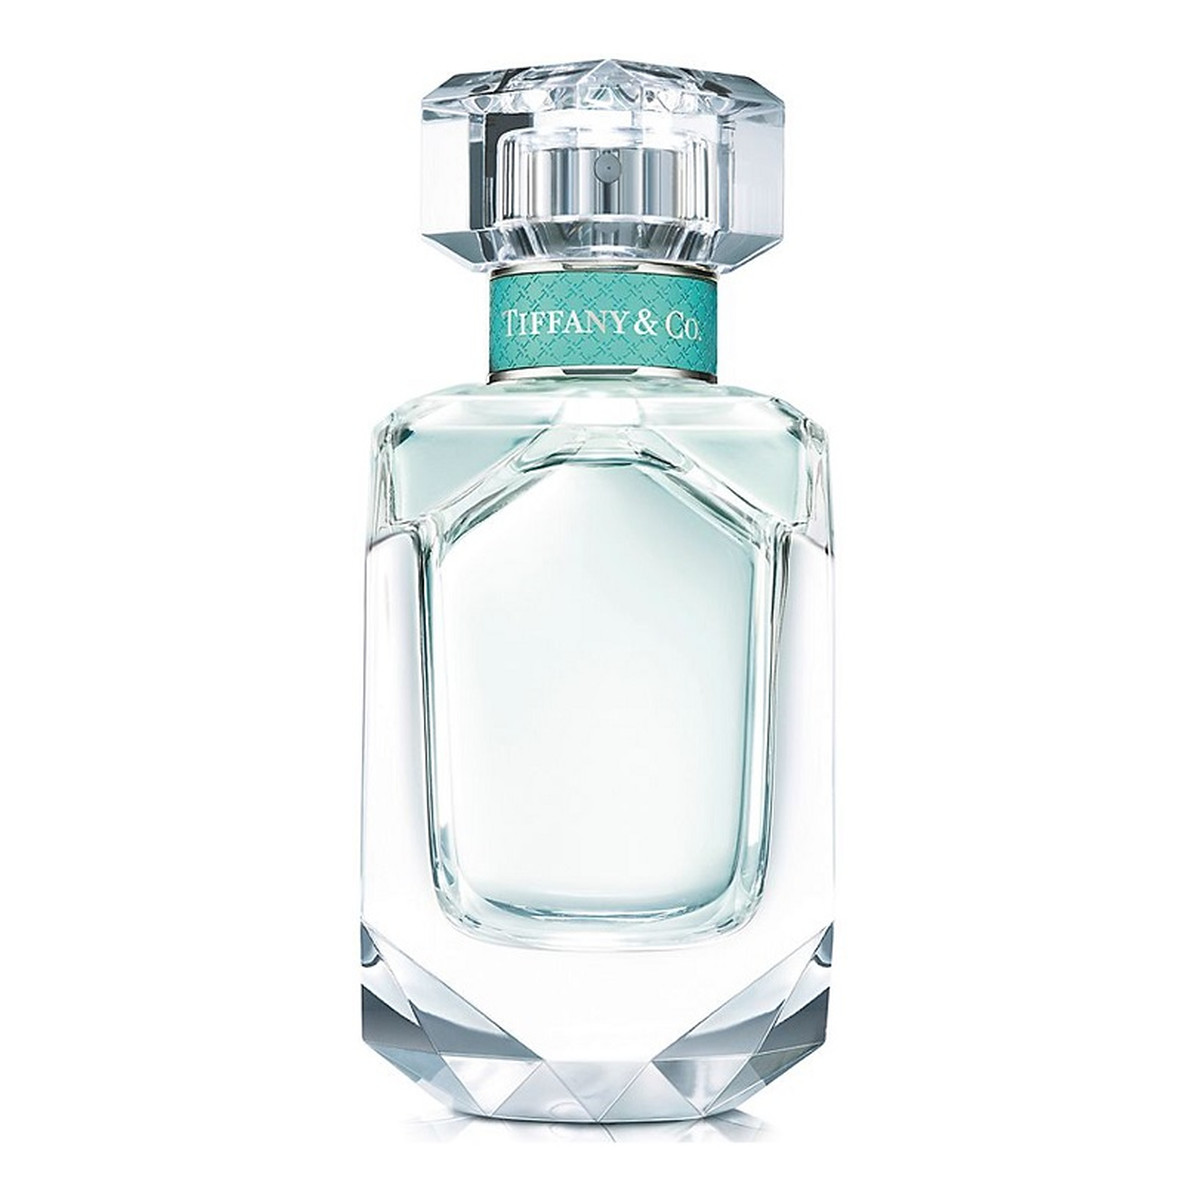 Tiffany & Co. & Co Woda perfumowana miniatura 5ml